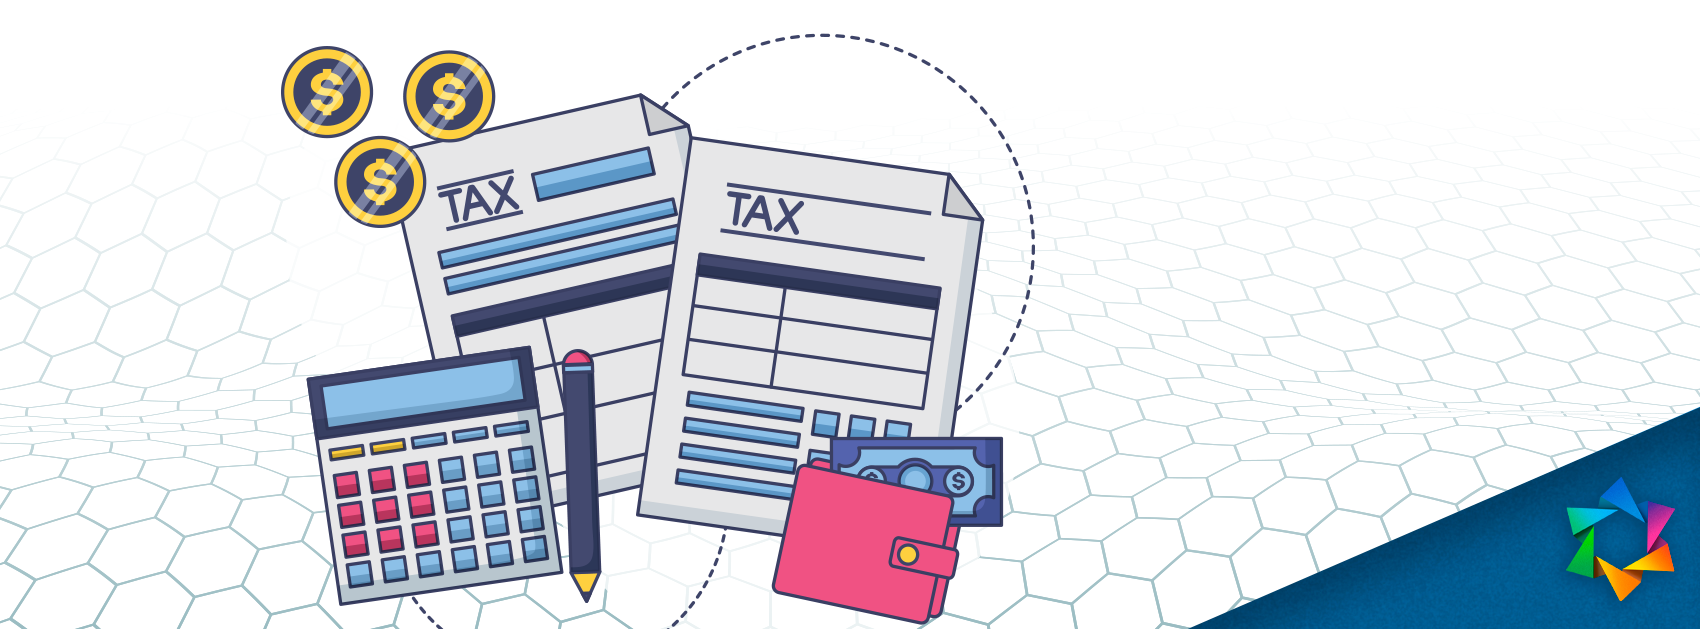 Qué es la contabilidad fiscal y cómo llevarla SaaSMexico Operam